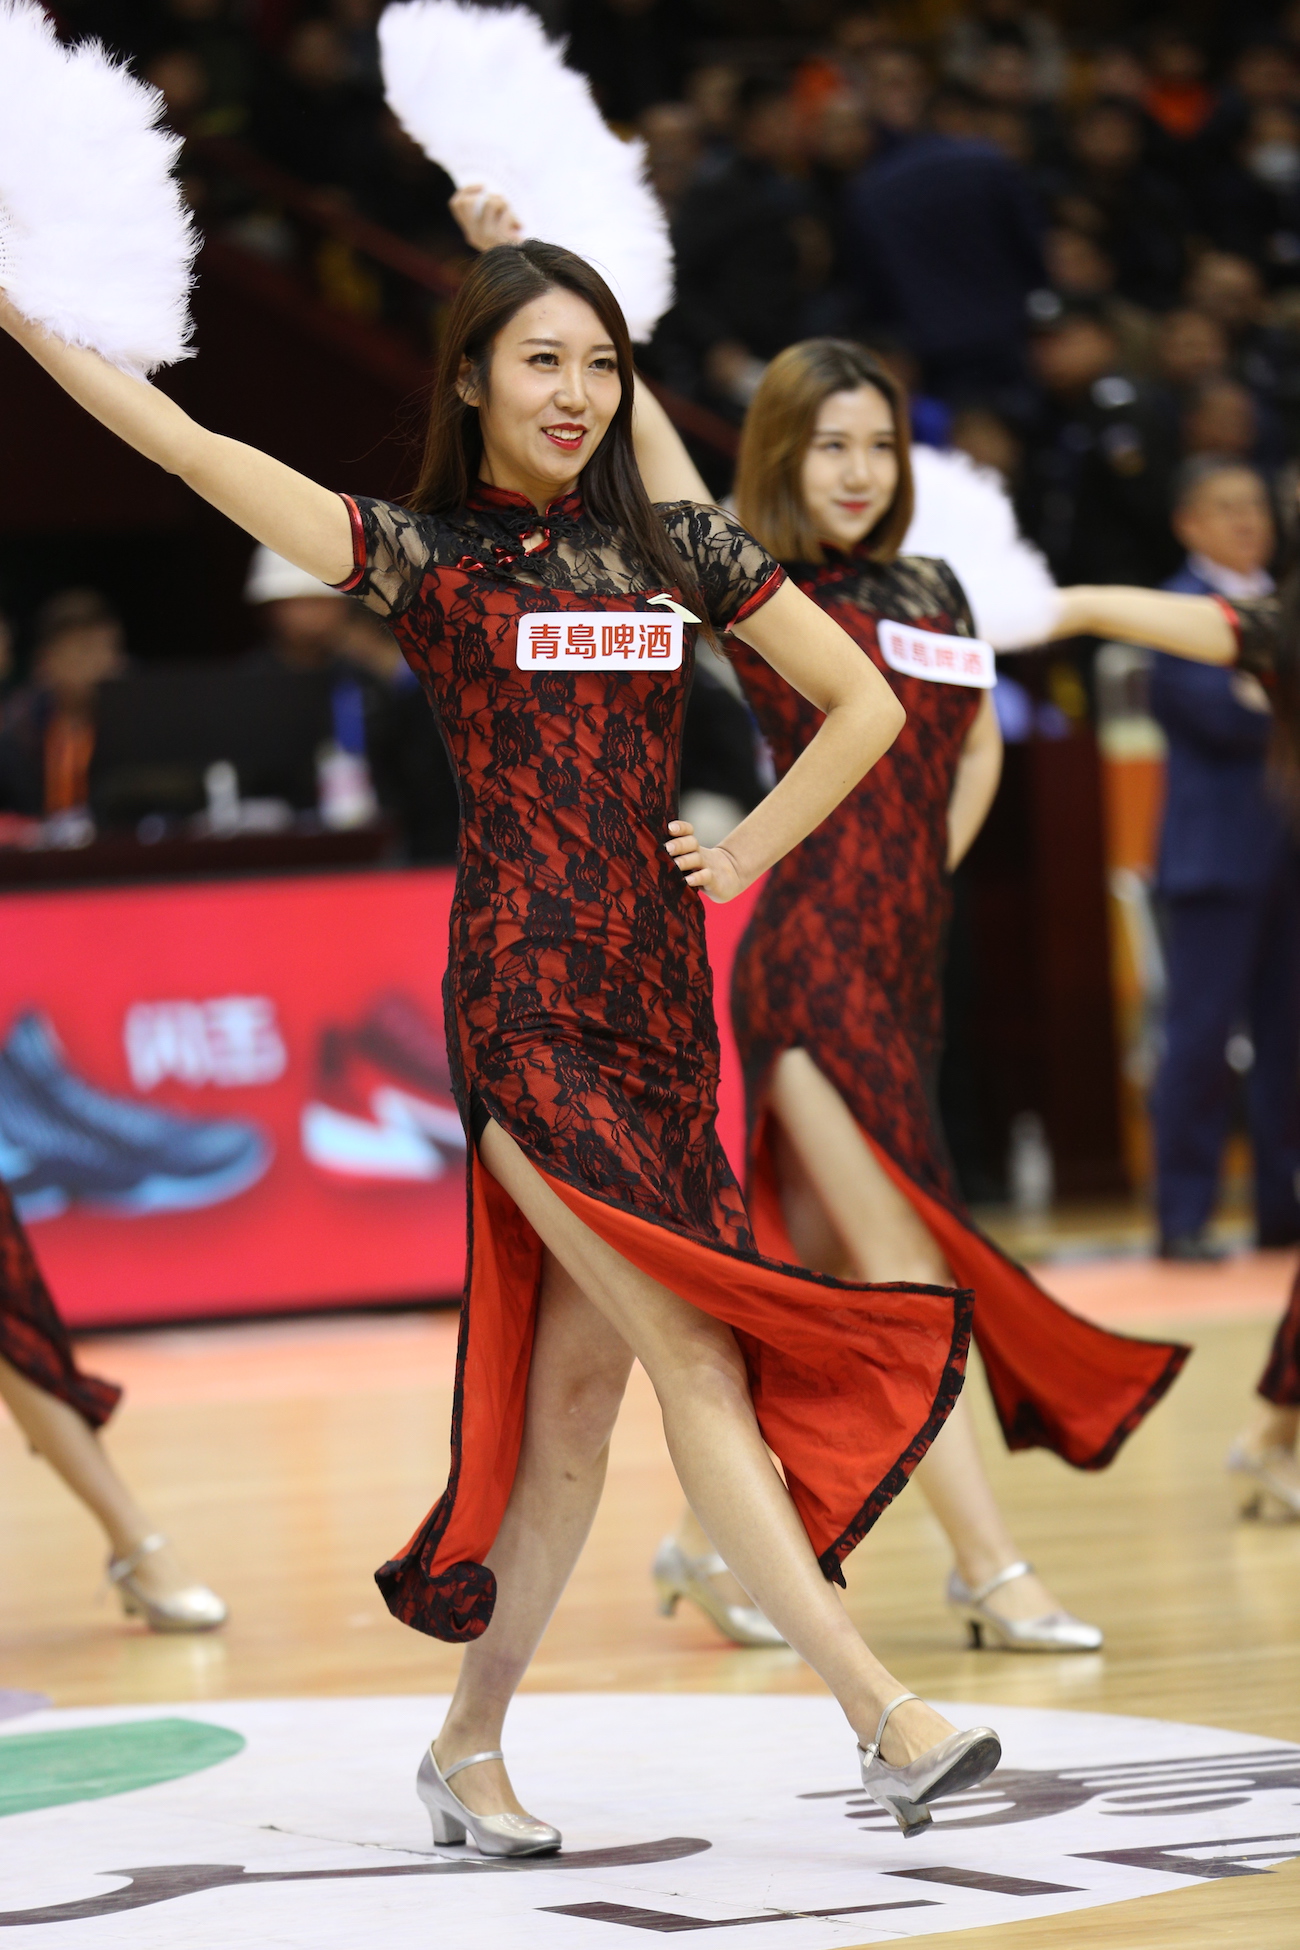 山东高速篮球宝贝深红旗袍性感热舞,复古风跳《大上海》引欢呼